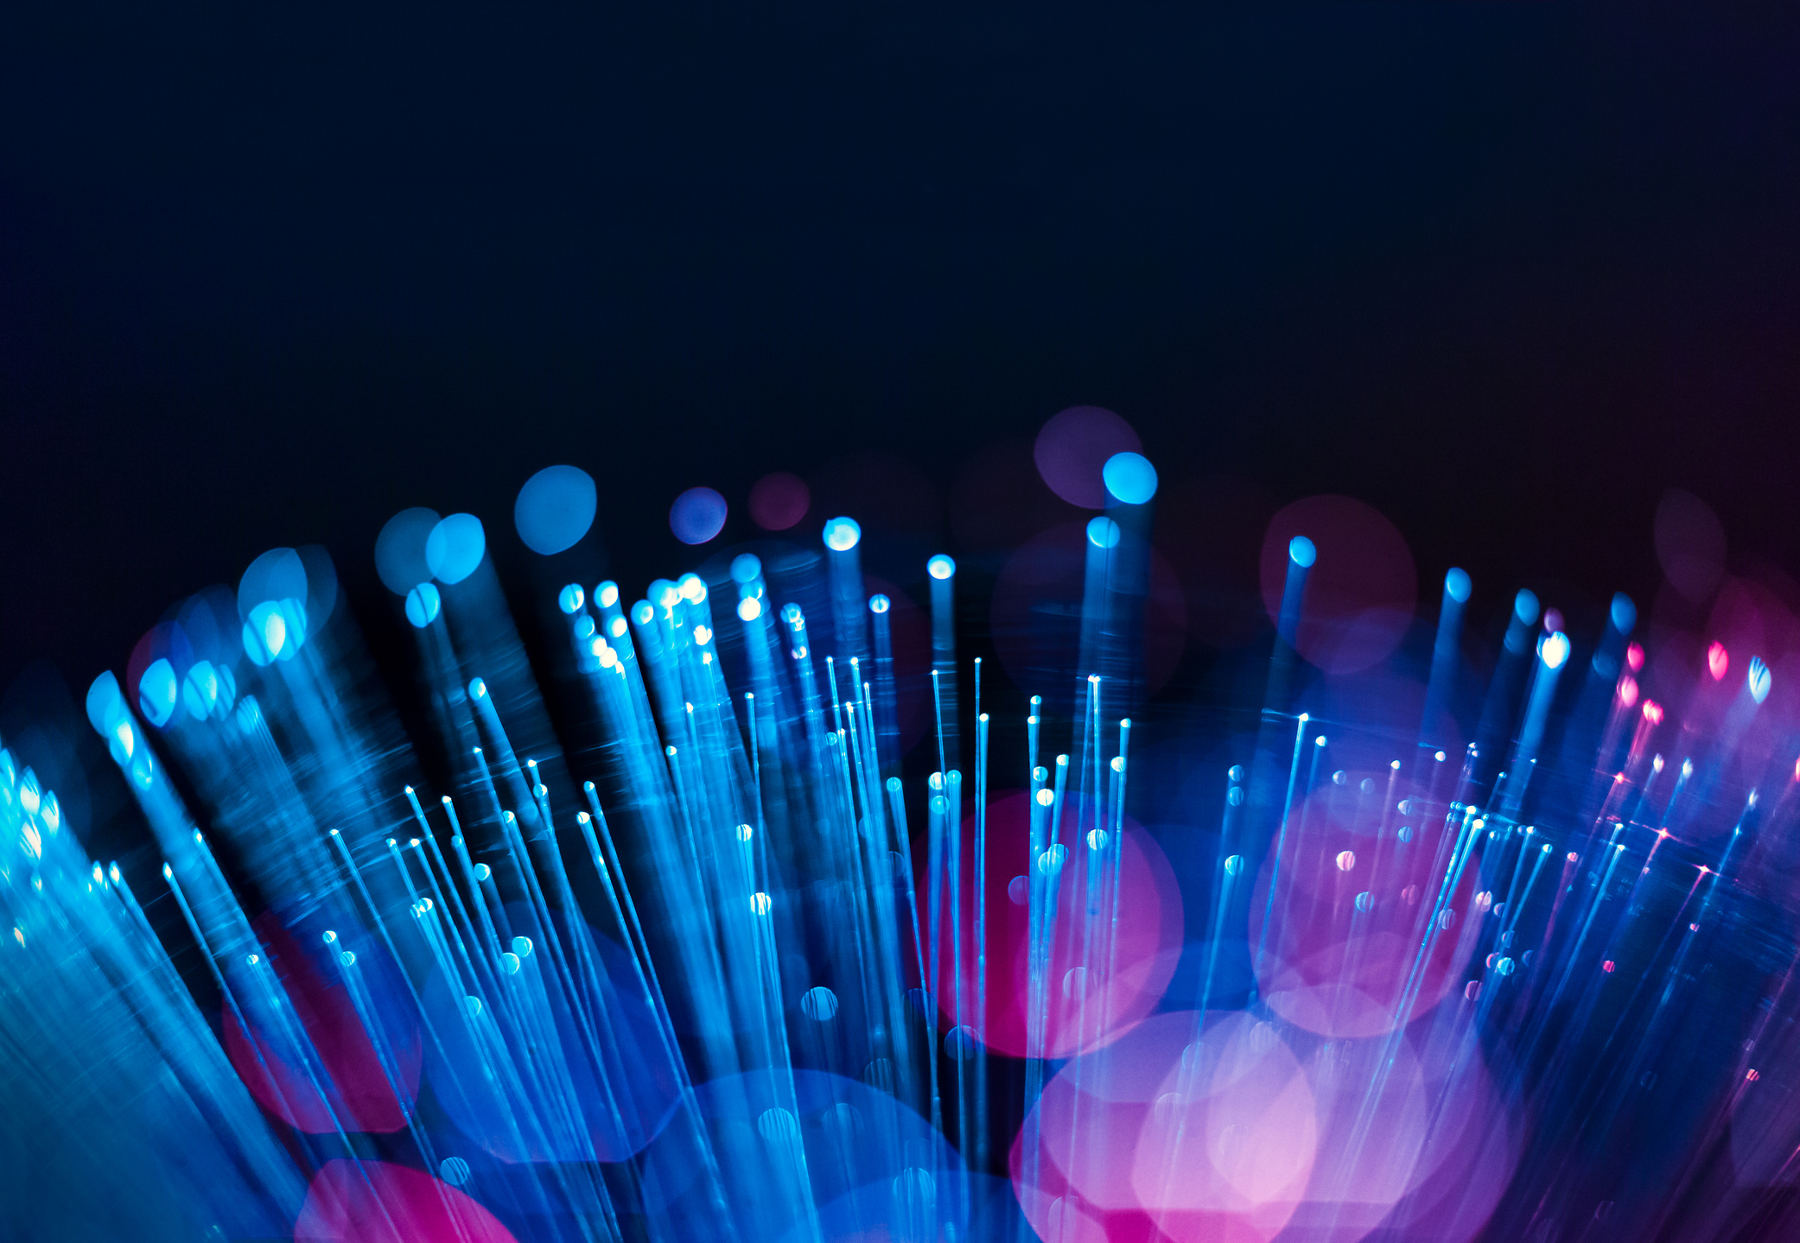 baratas para tener fibra óptica en casa según el precio por MB | Computer Hoy